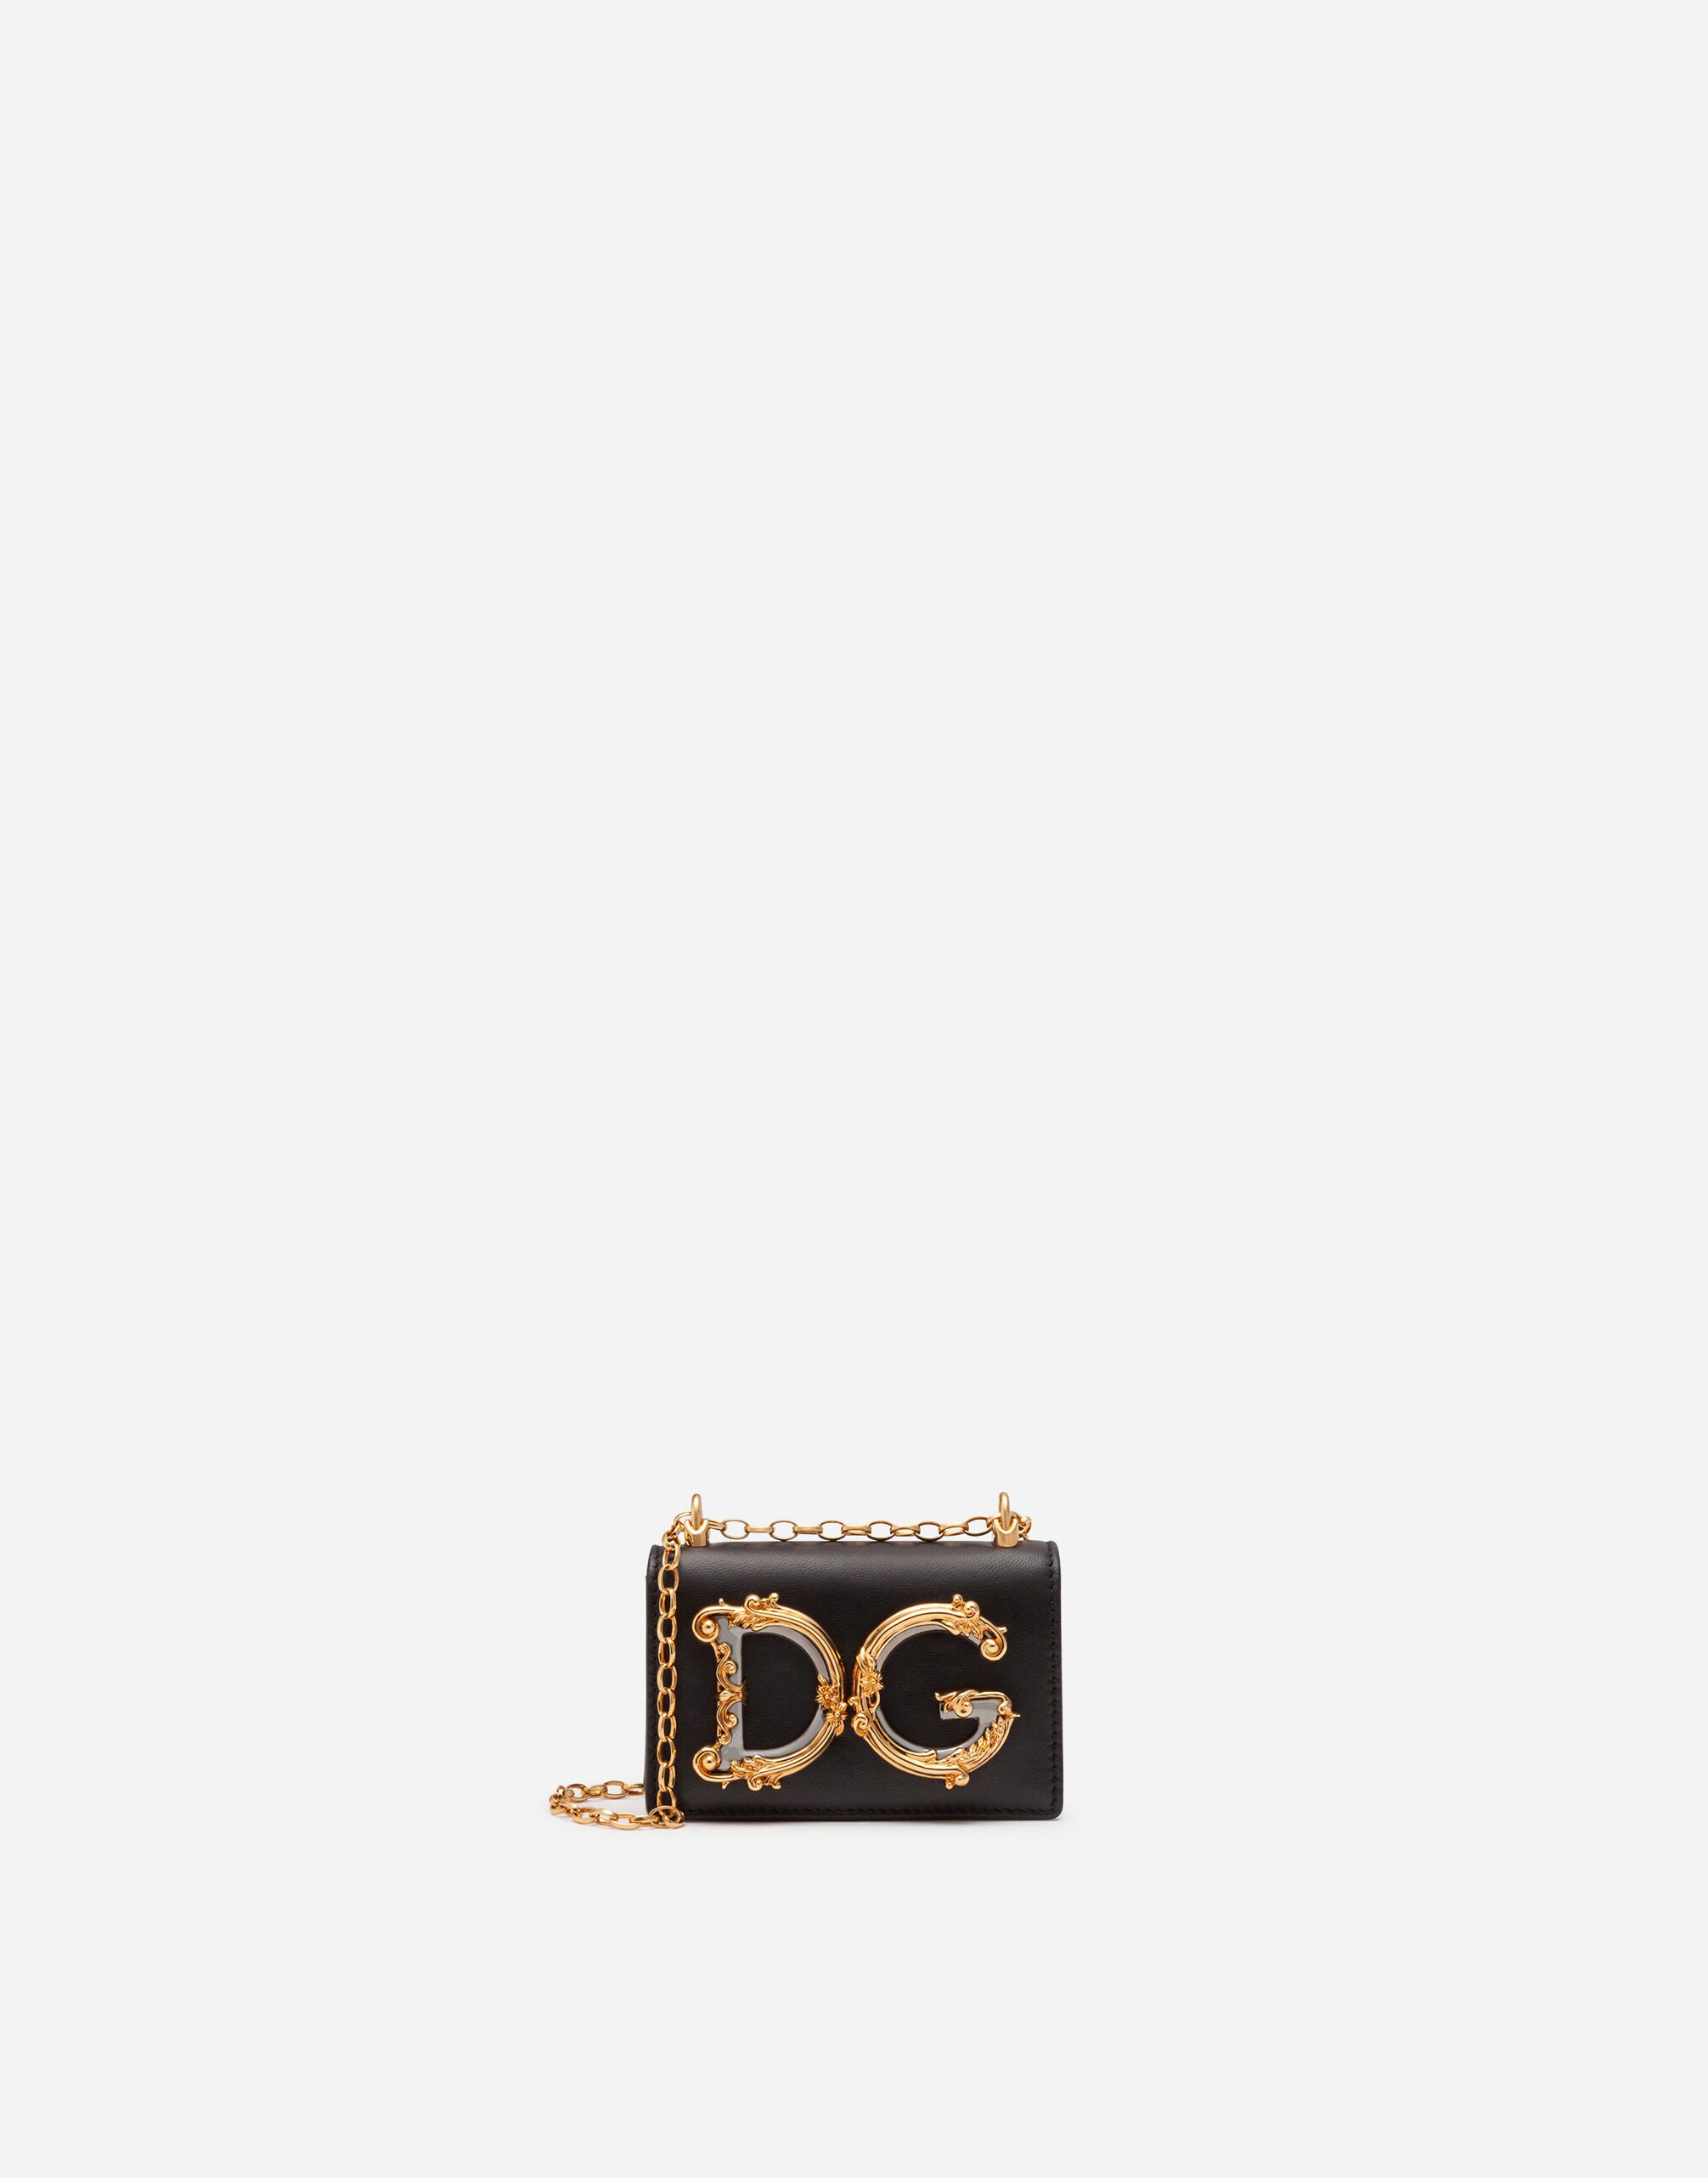 Dolce & Gabbana DG Girls micro bag in plain calfskin Black BB6652AV967